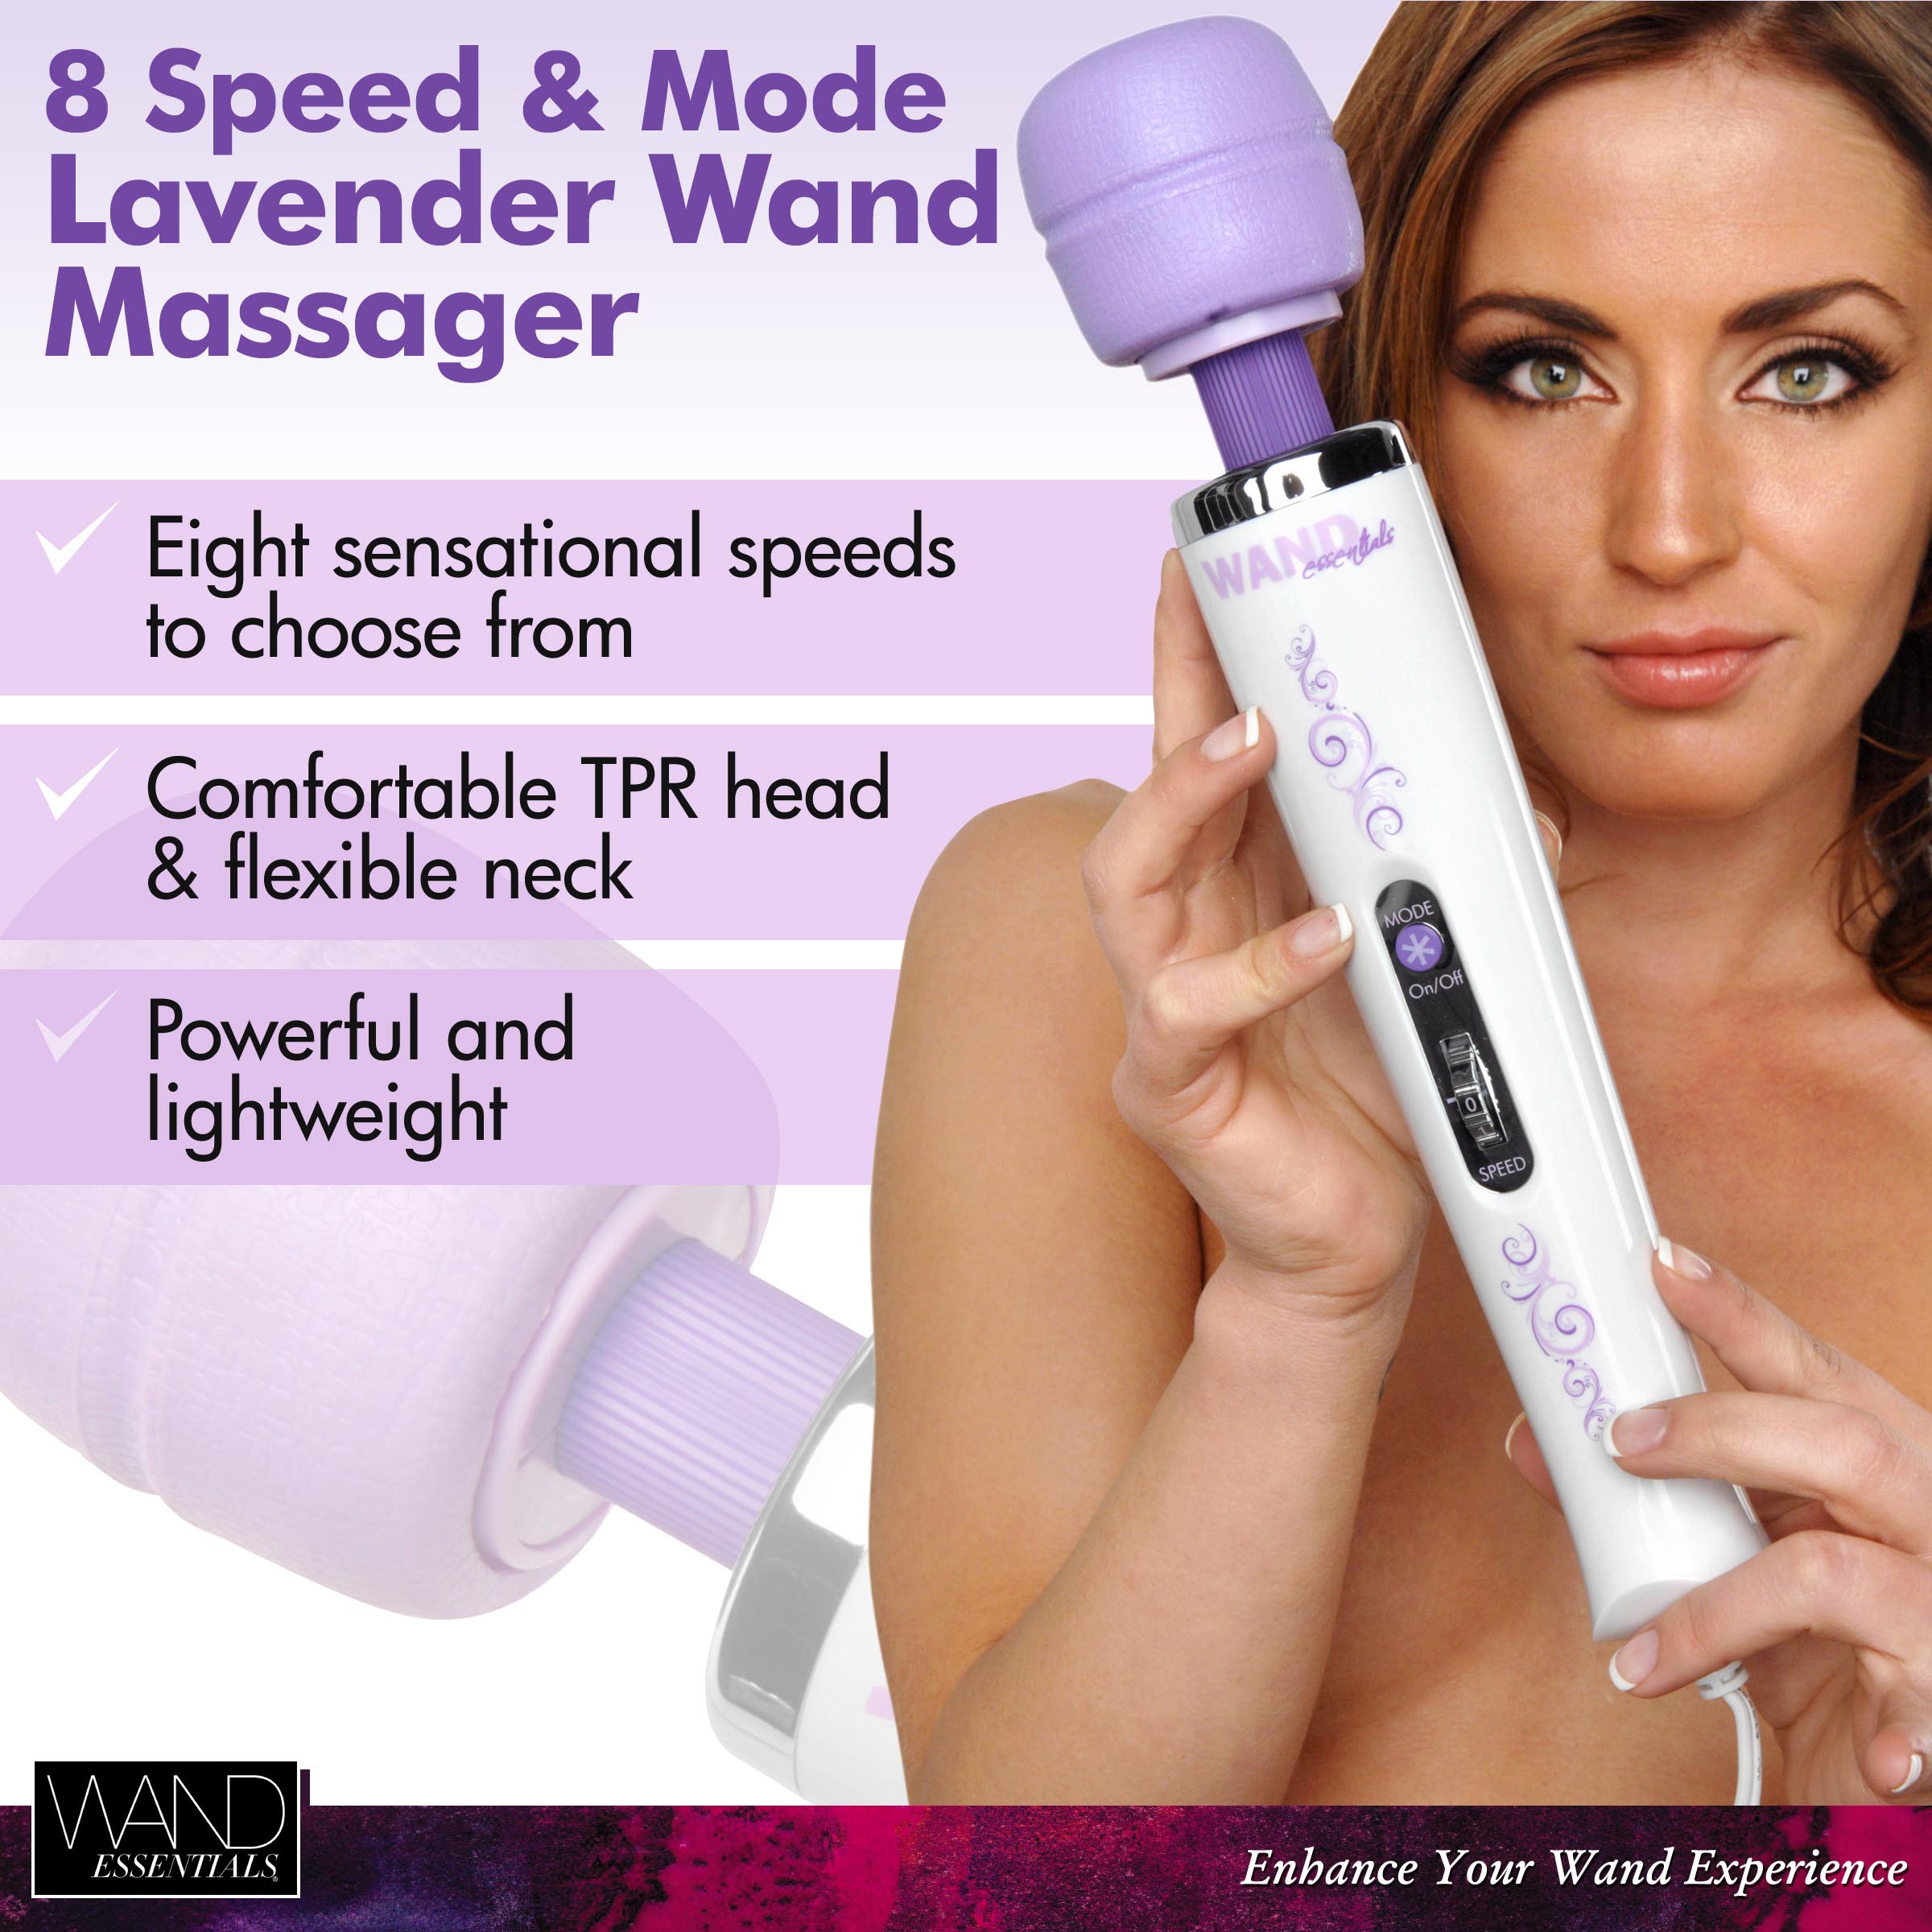 Wand Essentials 8 Speed 8 Mode Massager